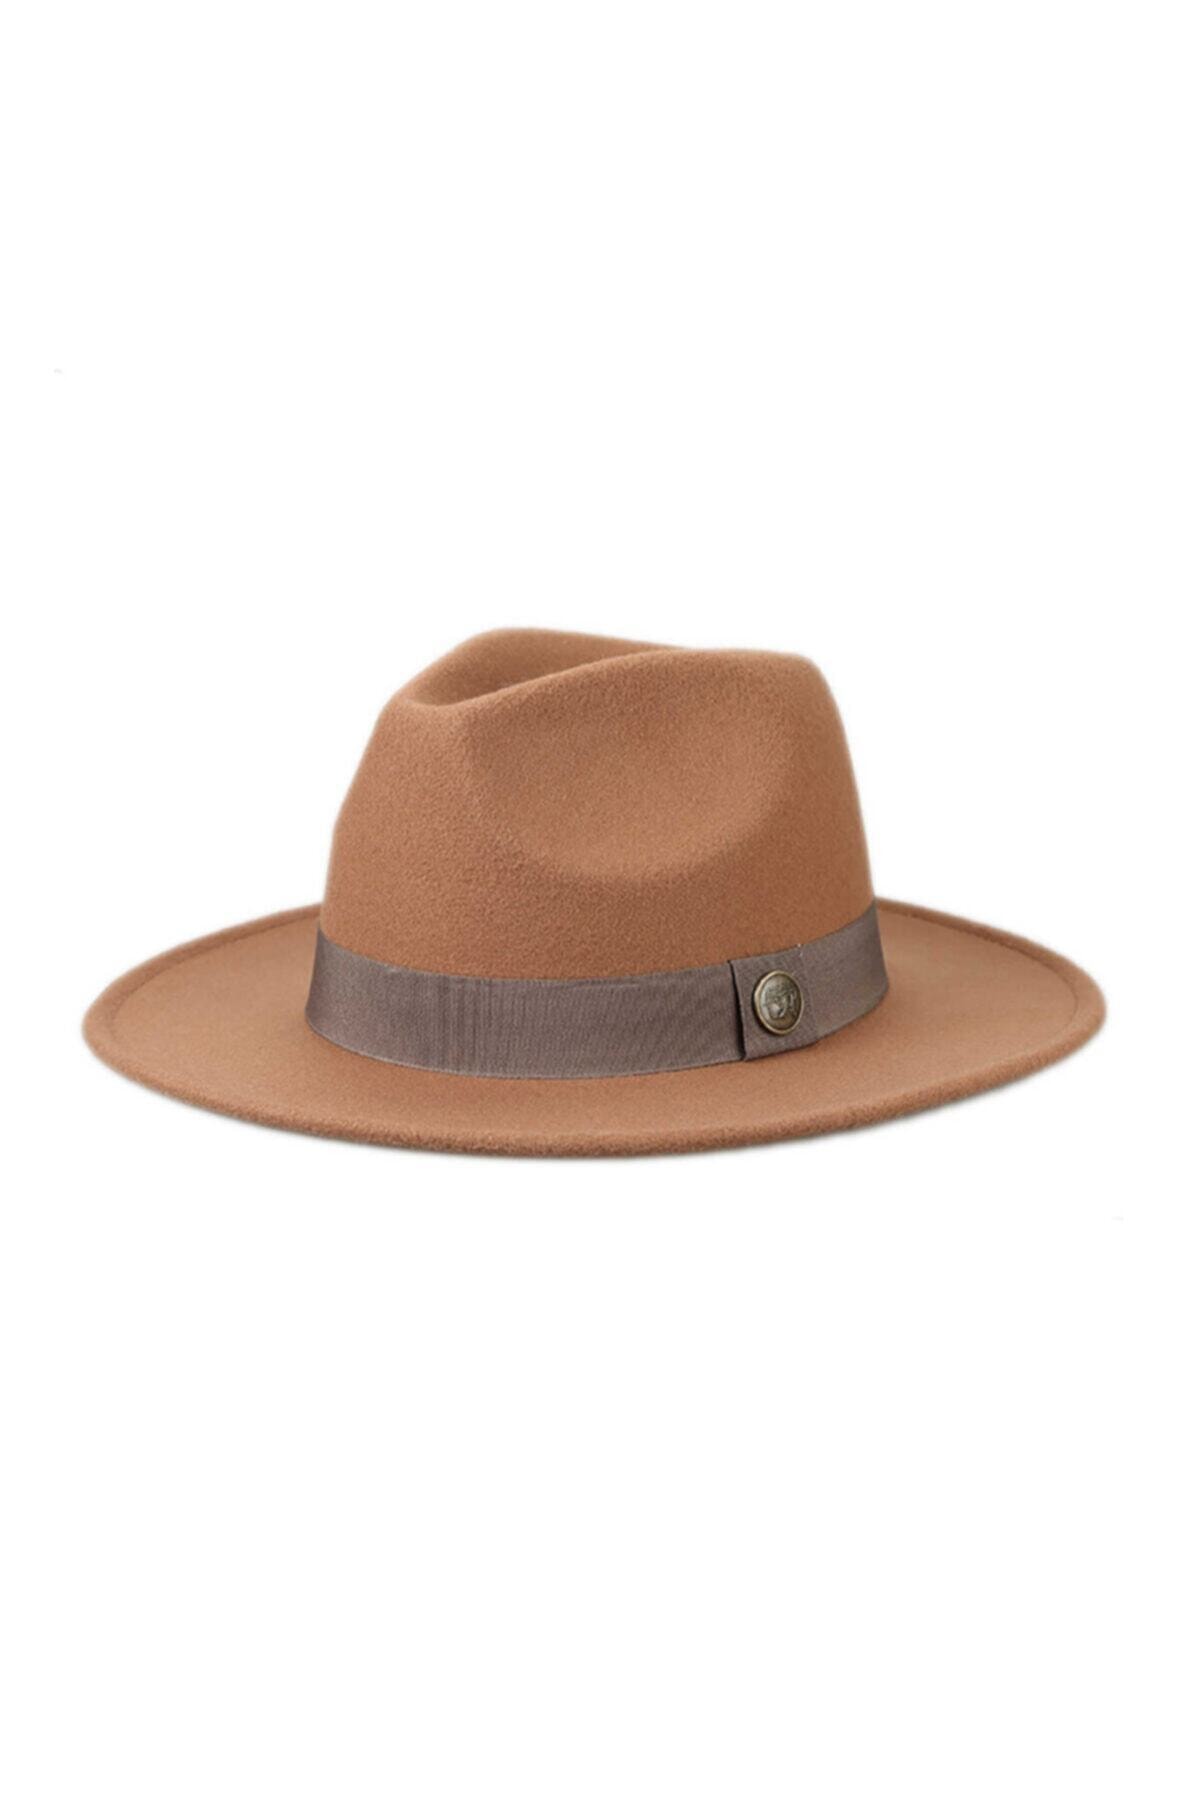 Hat Factory Panama Fötr Şapka